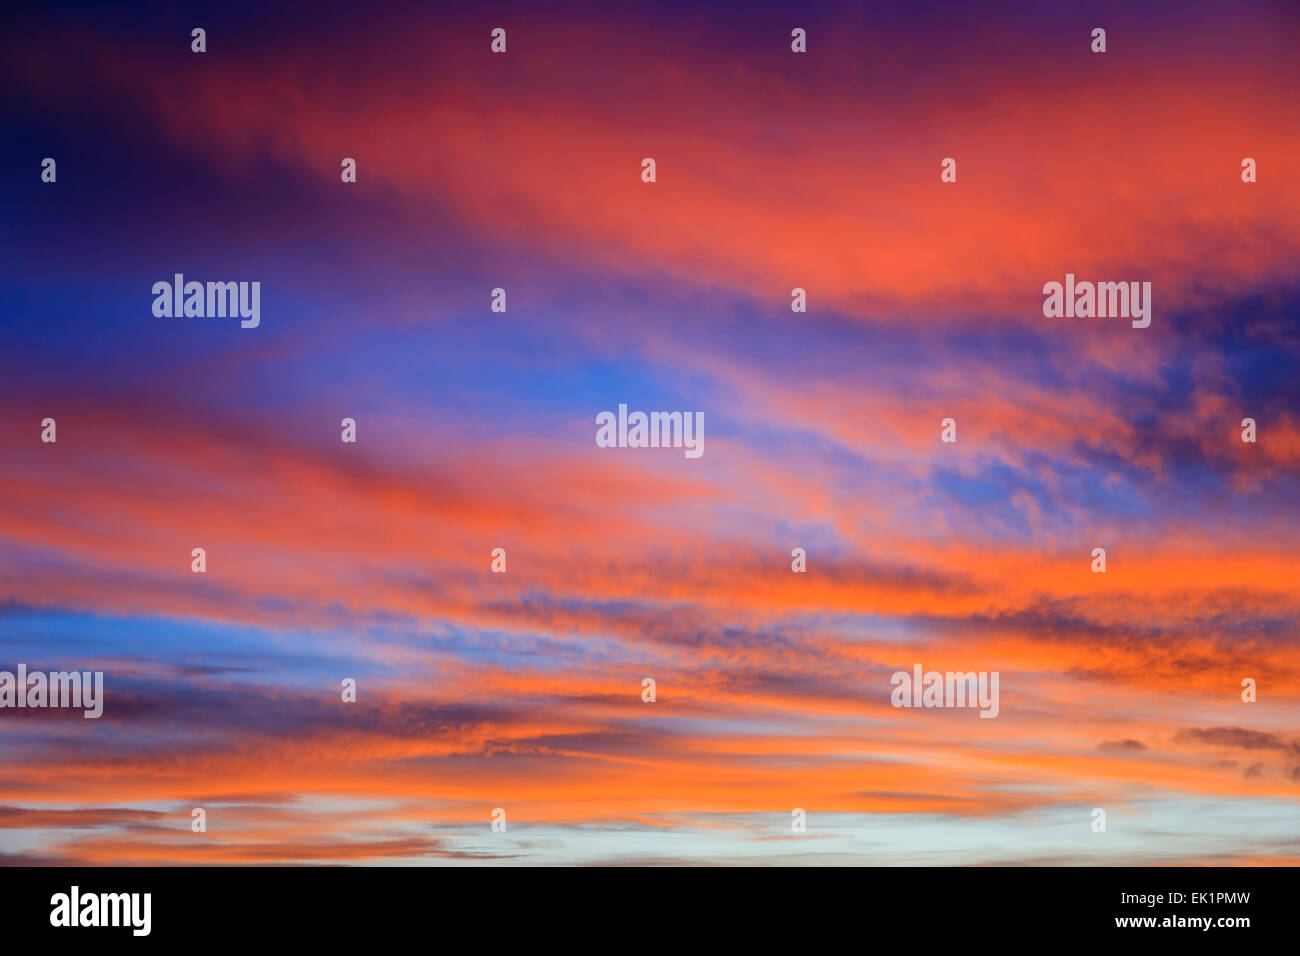 Firey sera di settembre skyscape con nubi accese dal tramonto rosso contro un oscuramento blue sky. Inghilterra, Regno Unito, Gran Bretagna Foto Stock